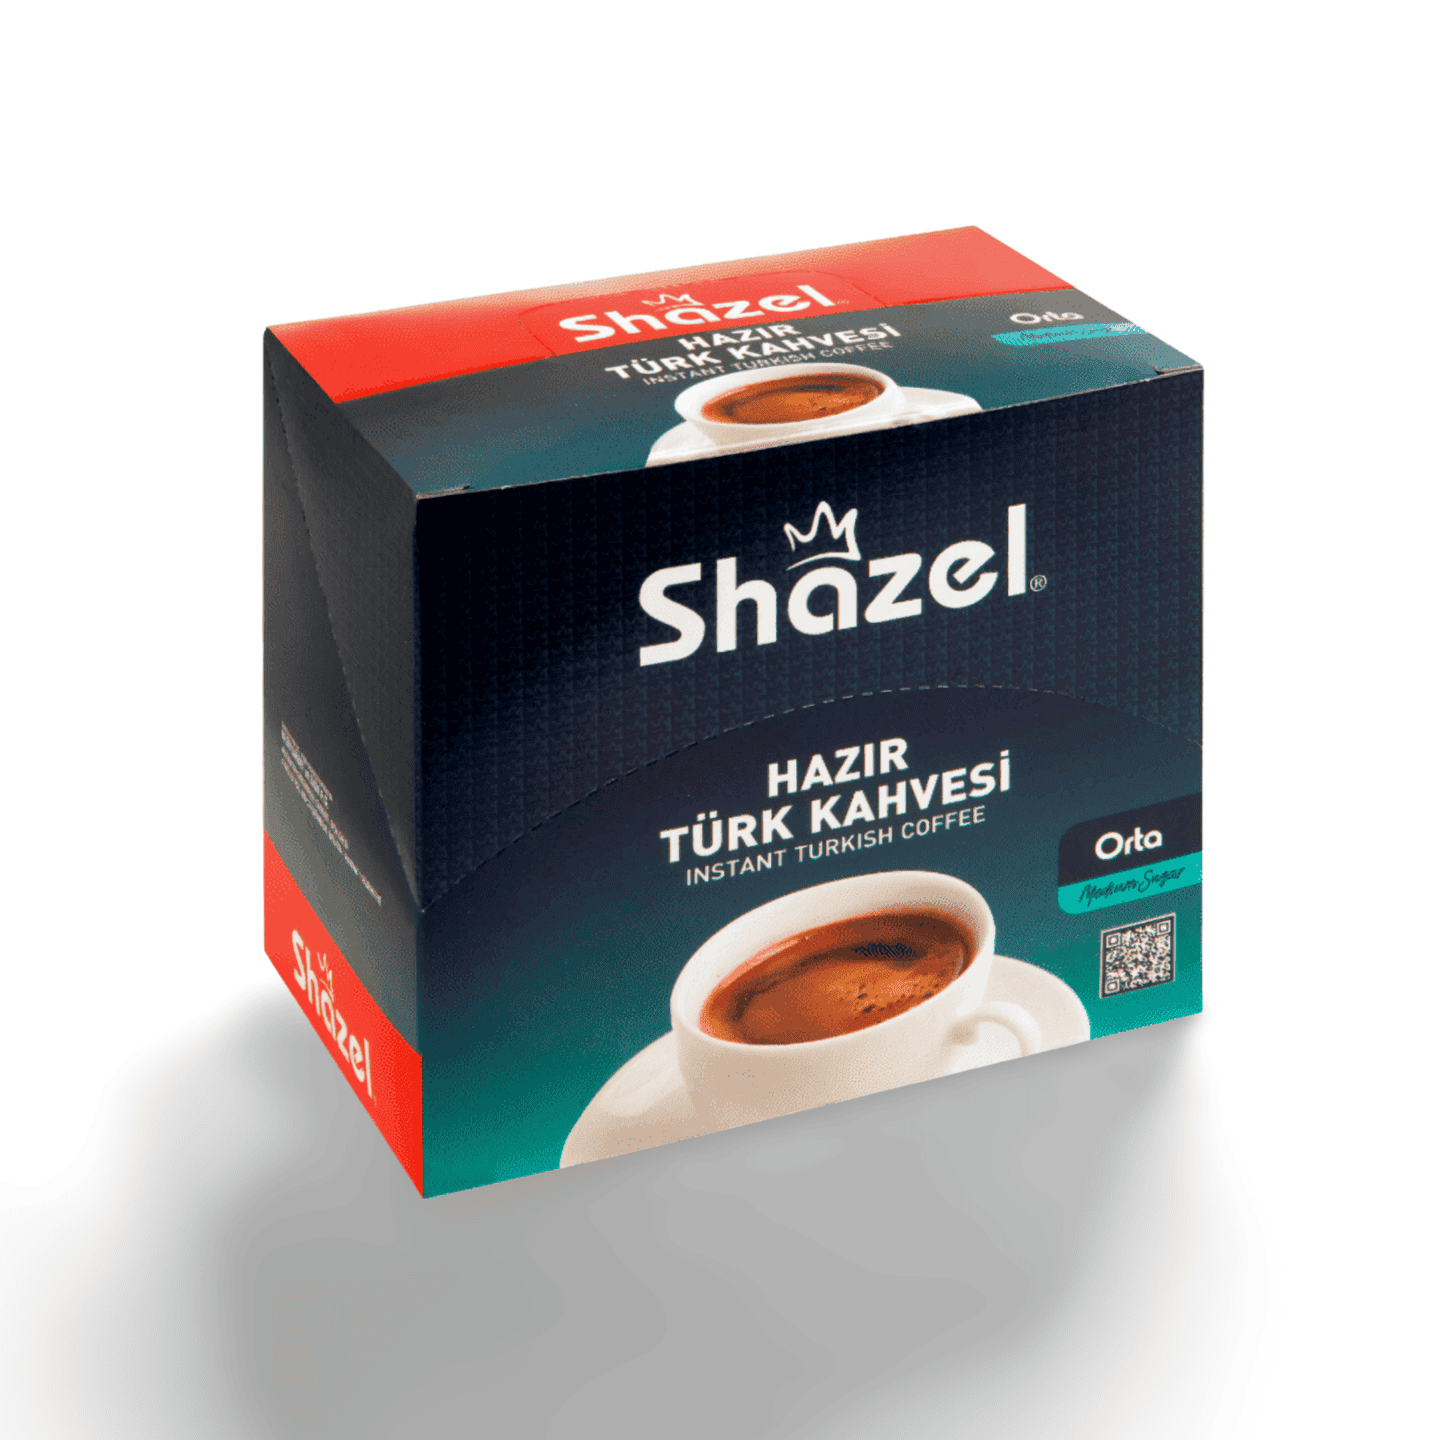 Shazel Plain Instant Turkish Coffee